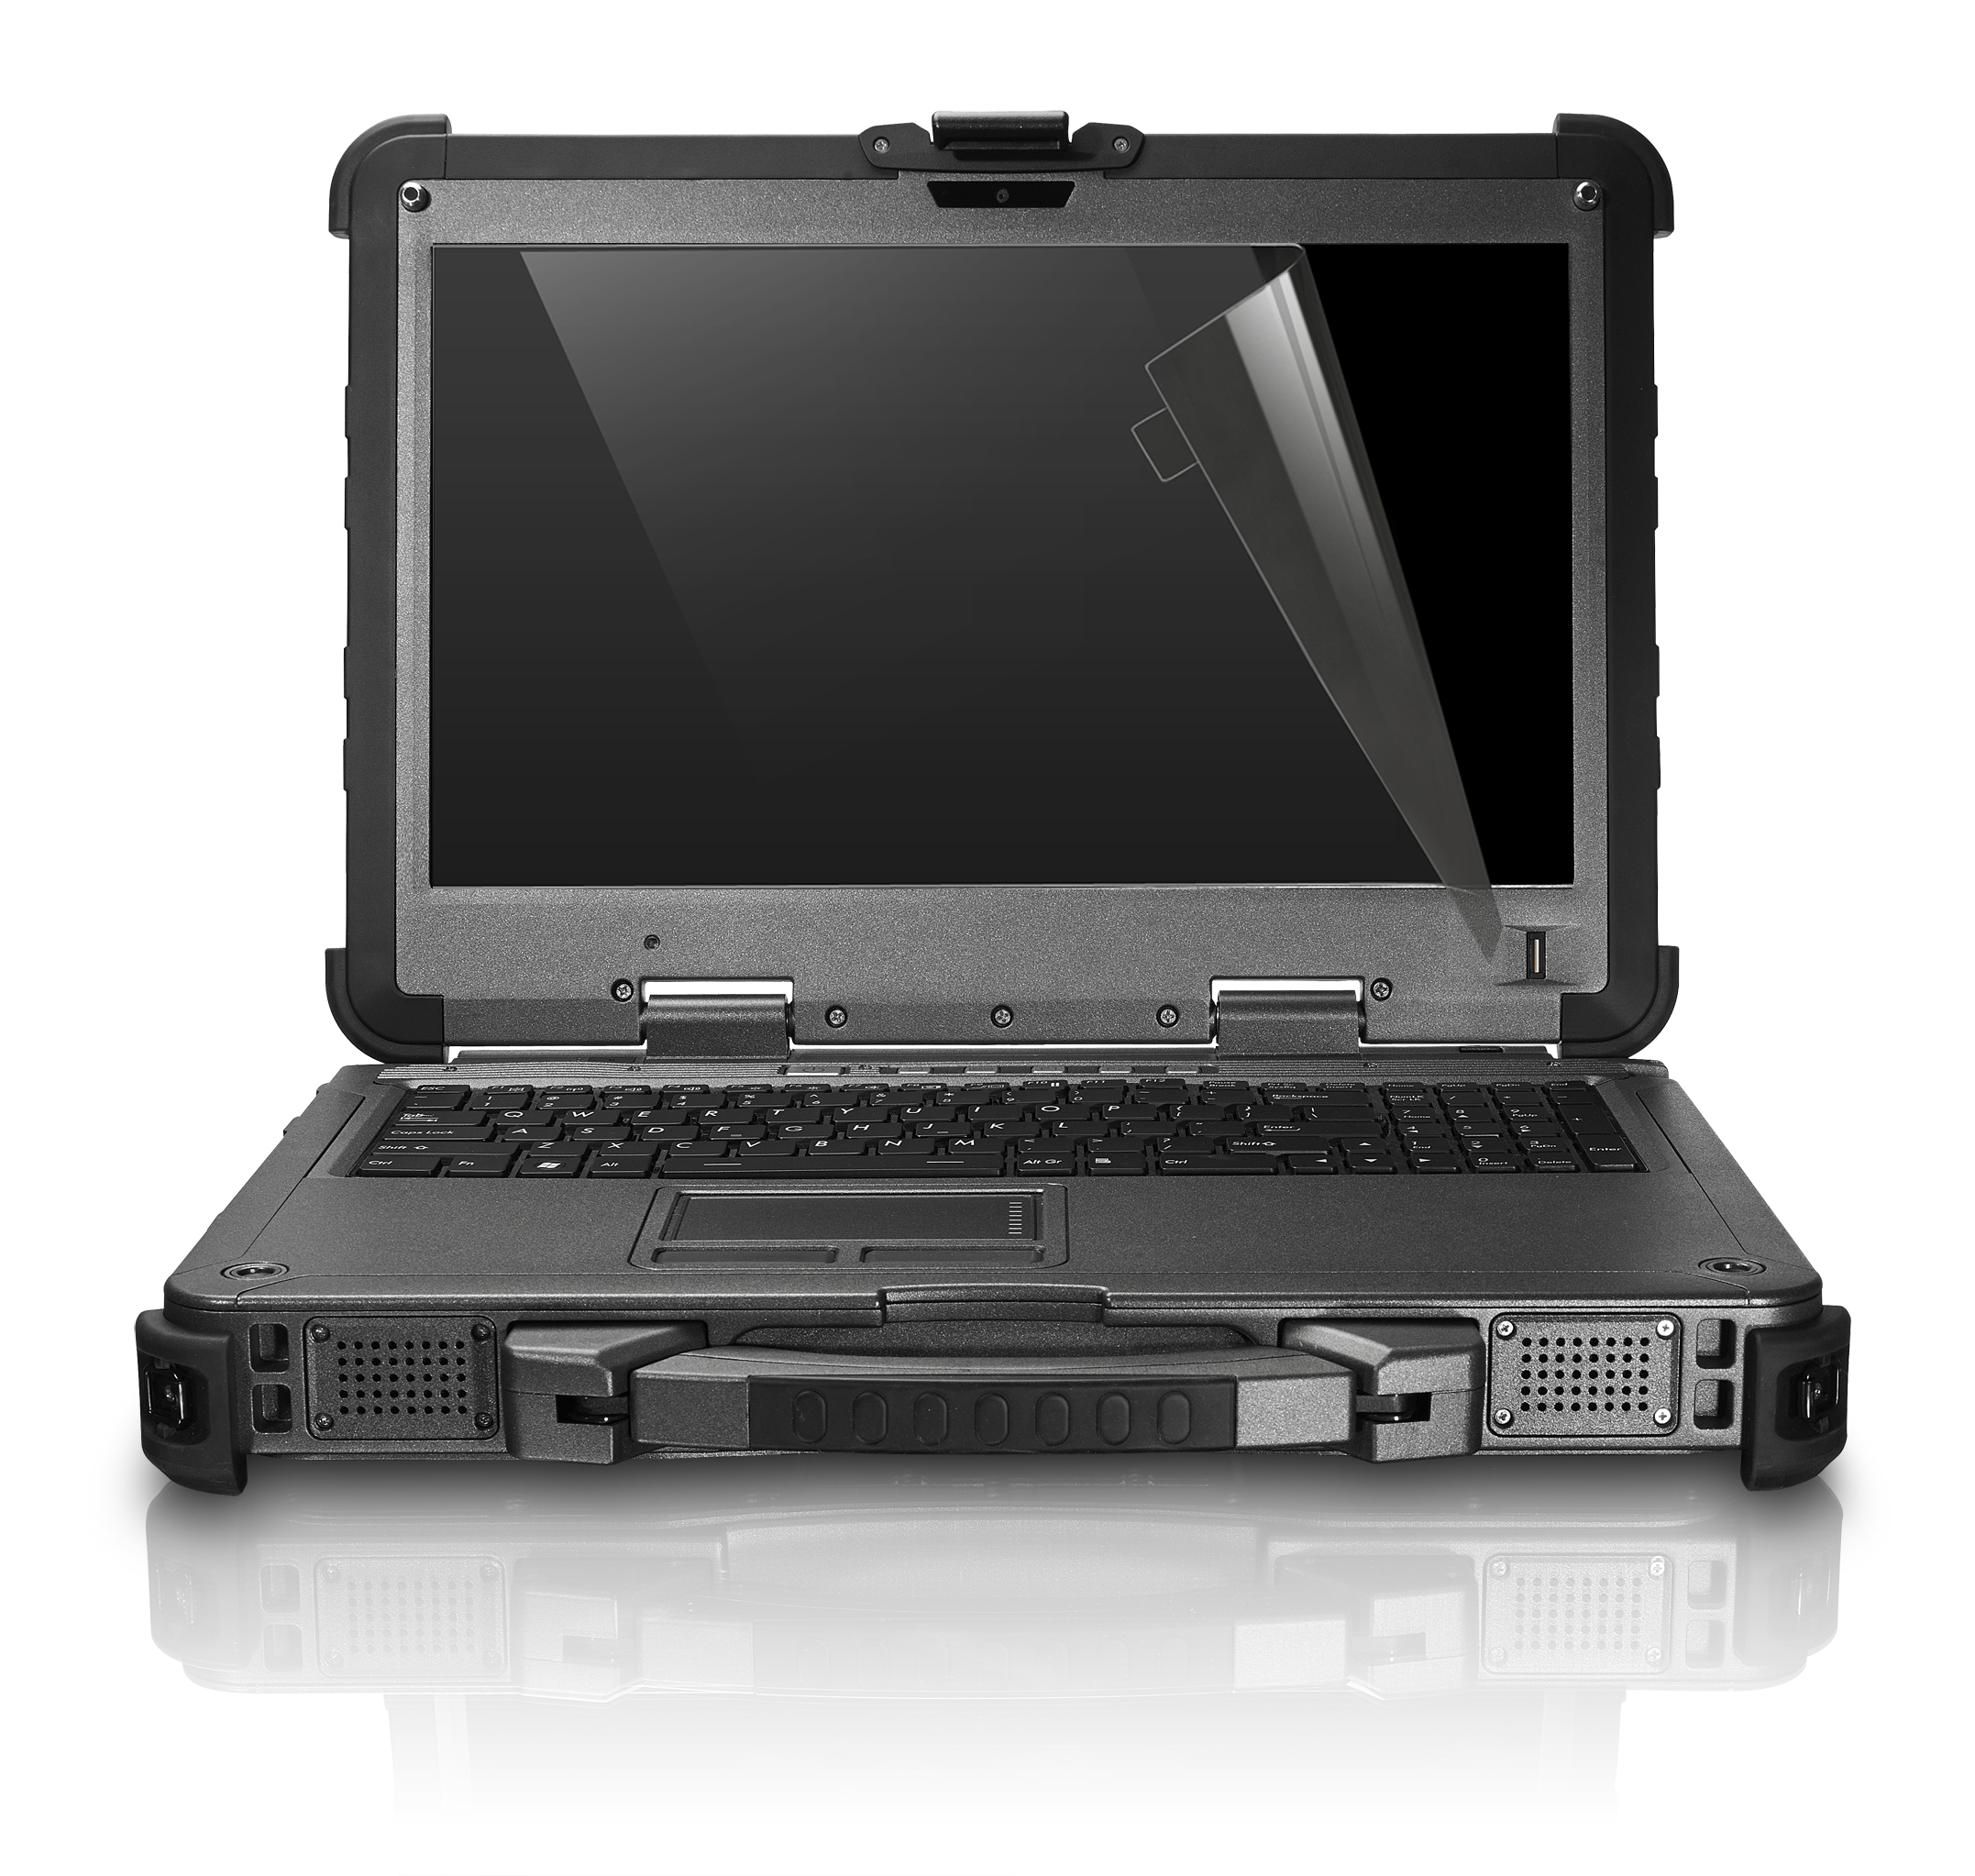 ПАК на базе ноутбука Getac X500